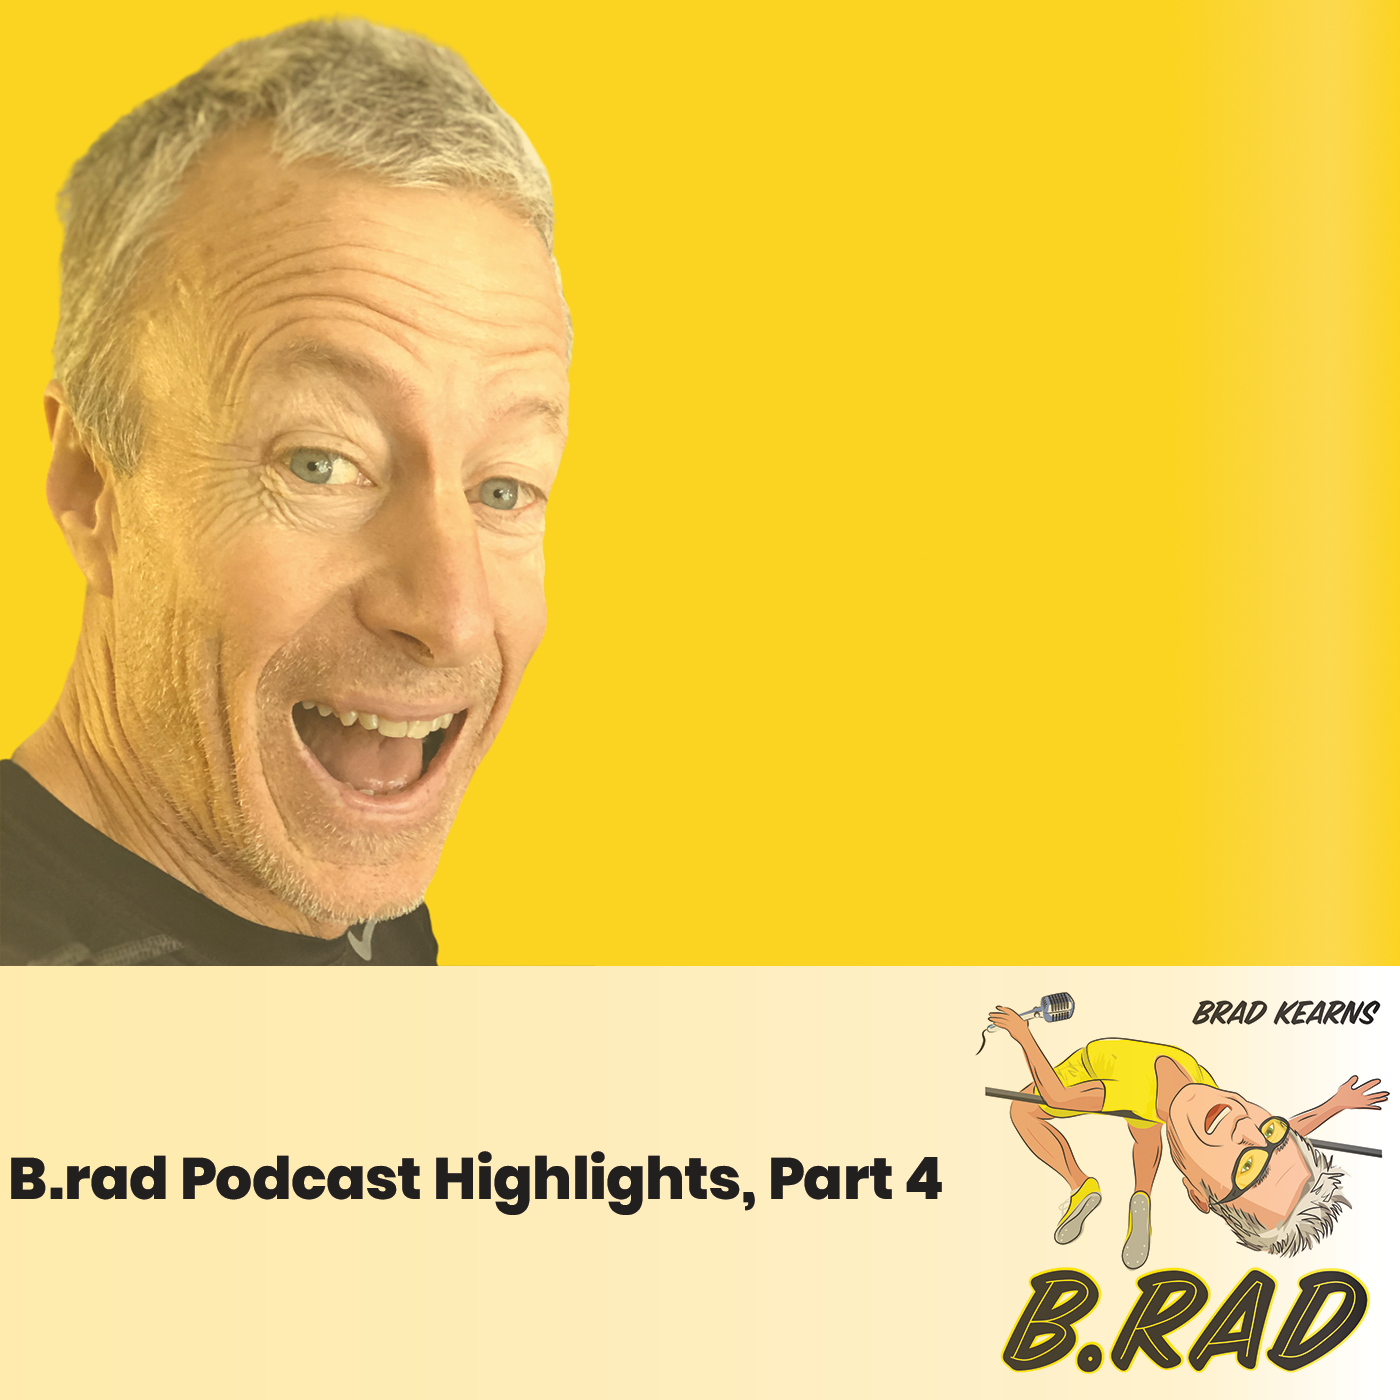 B.rad Podcast Highlights, Part 4